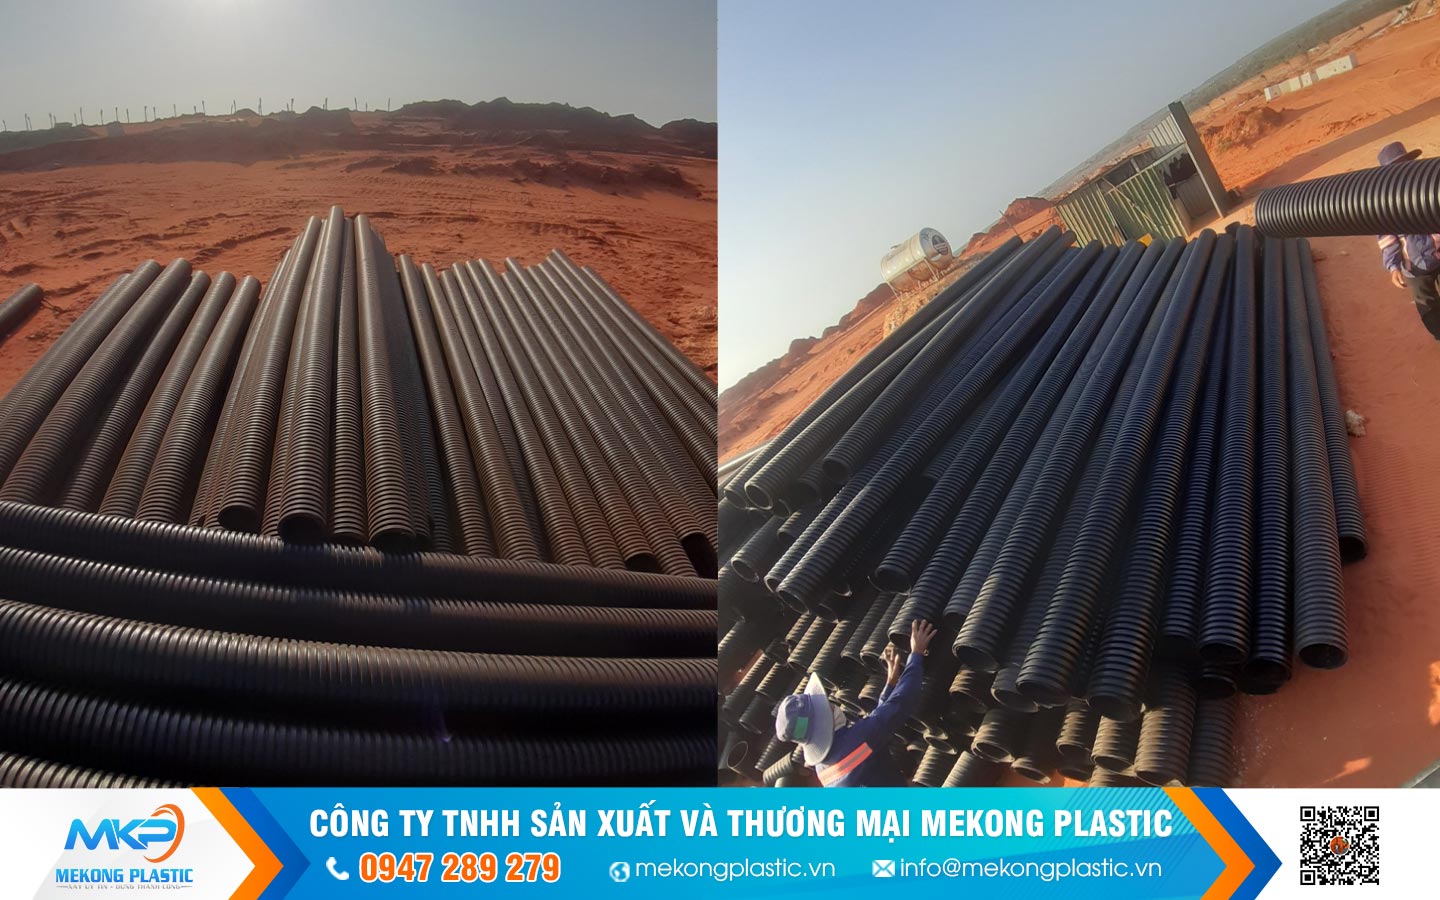 Tìm hiểu kích thước ống nhựa HDPE 2 lớp – gân xoắn tại Mekong Plastic